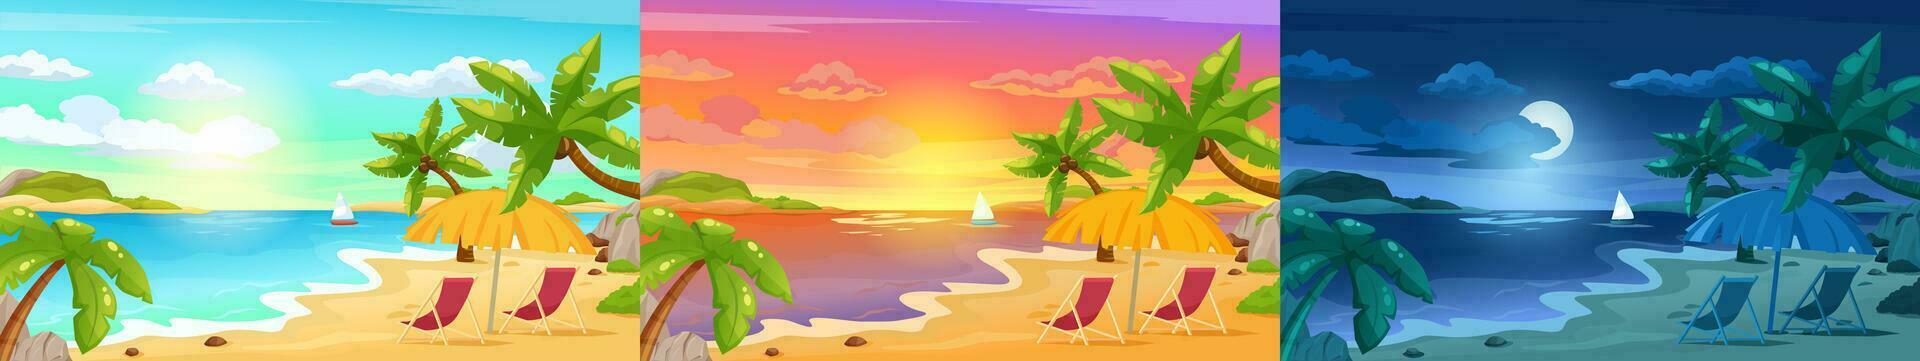 spiaggia paesaggio a notte, tropicale isola tramonto scena. estate vacanza vacanza, soleggiato estate paesaggio marino con palme vettore illustrazione